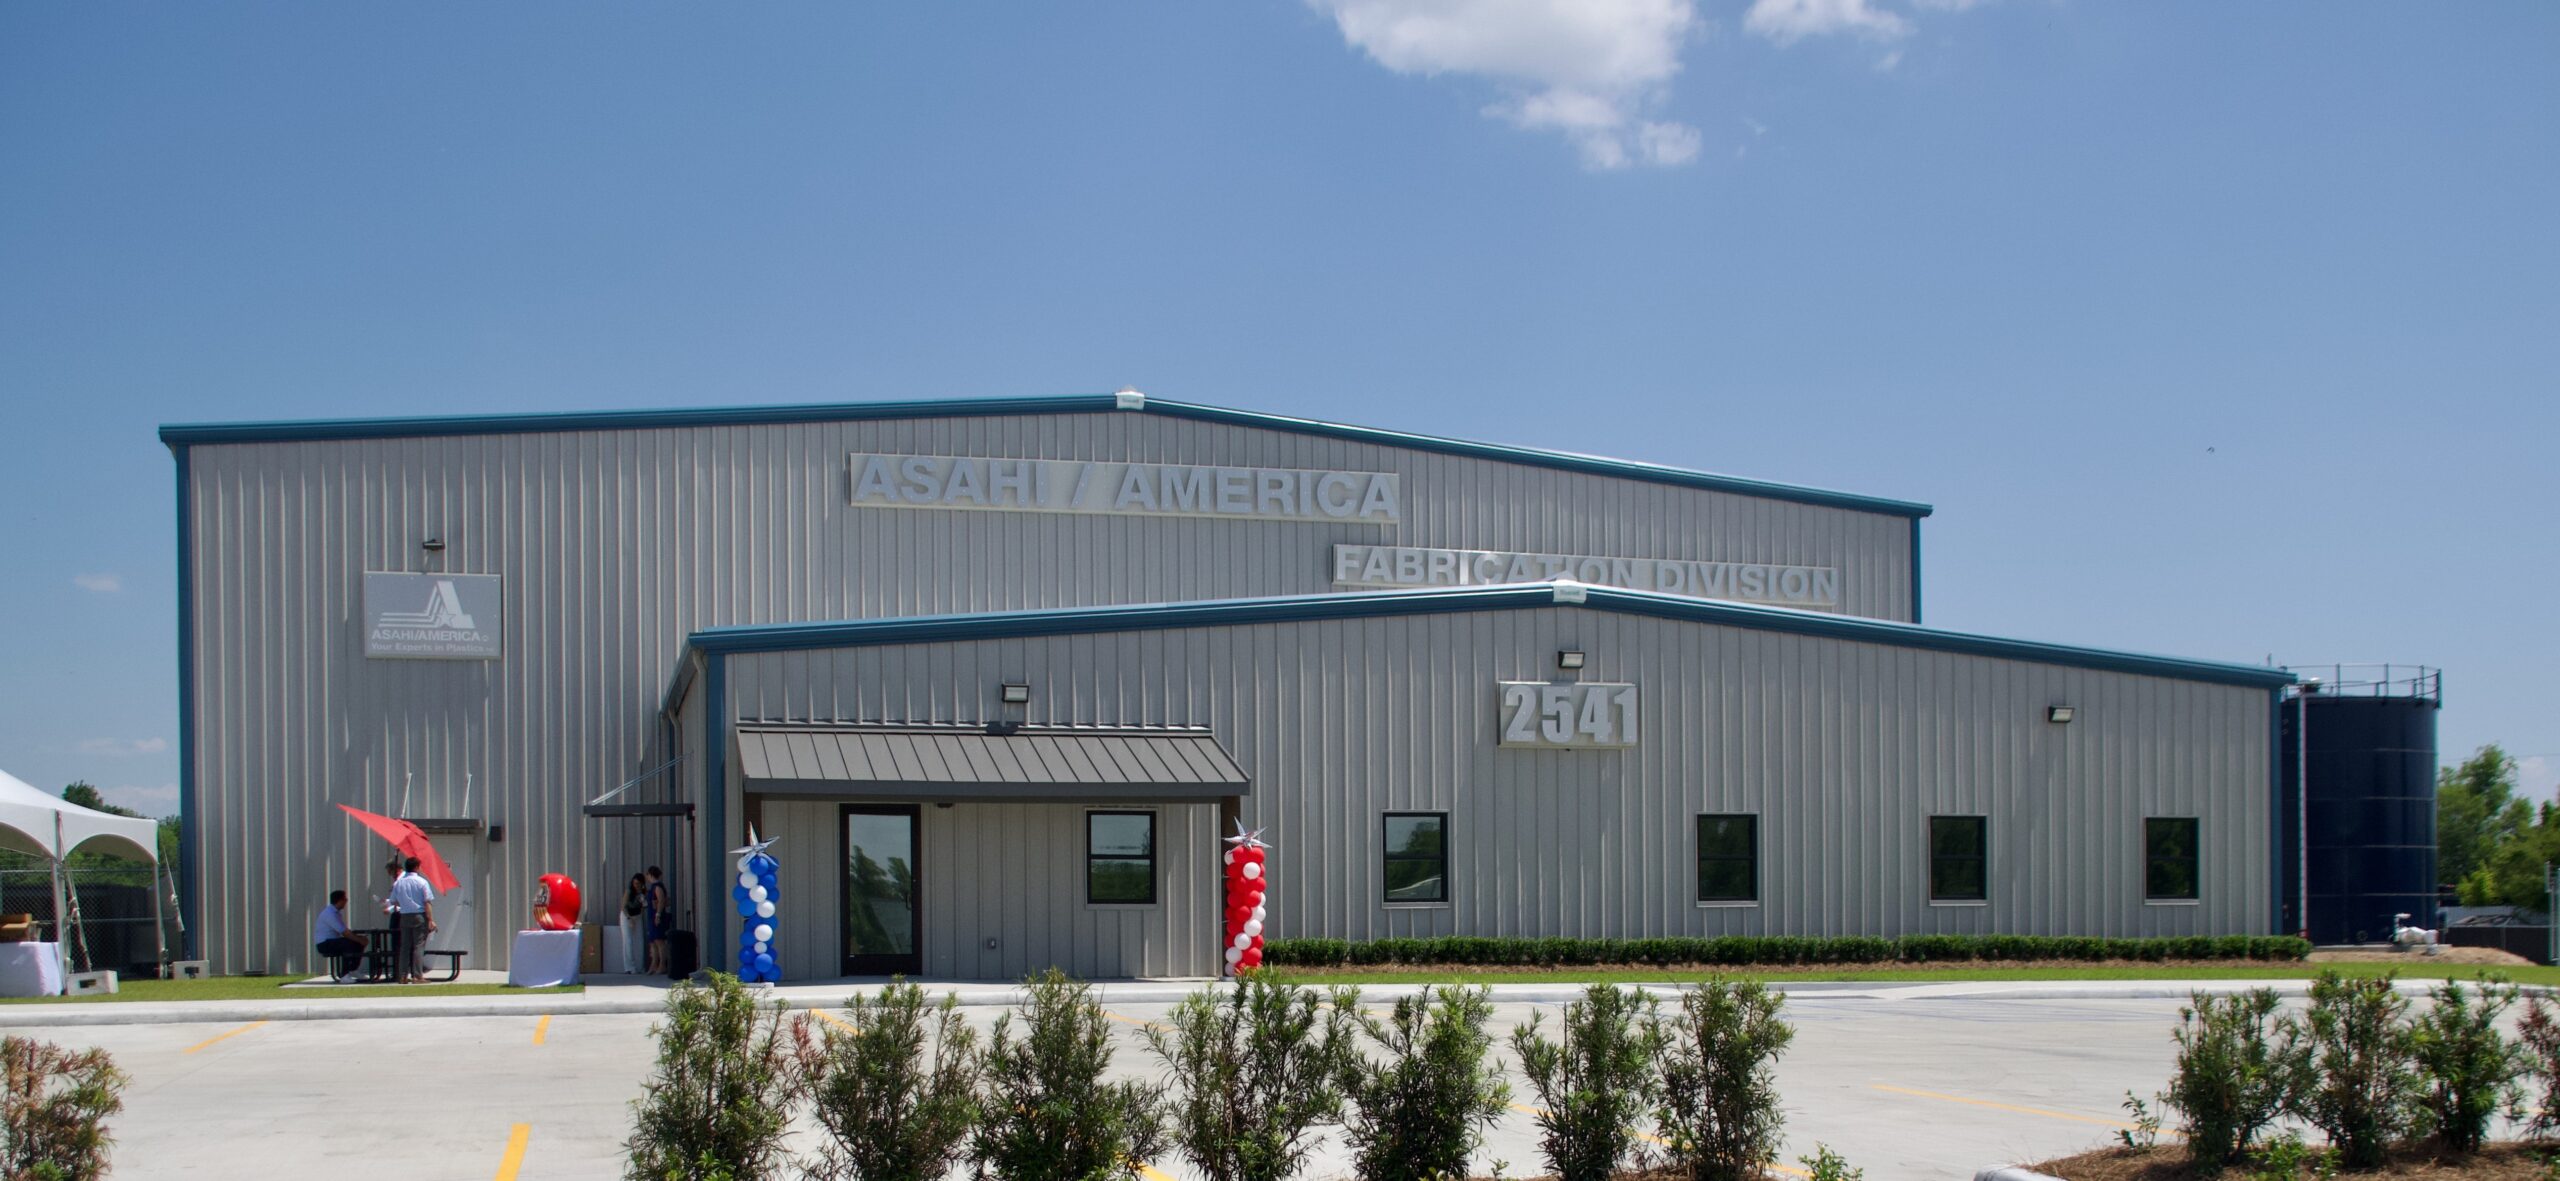 旭有機材、アメリカ子会社でプレファブリケーション用加工製品の新工場が完成